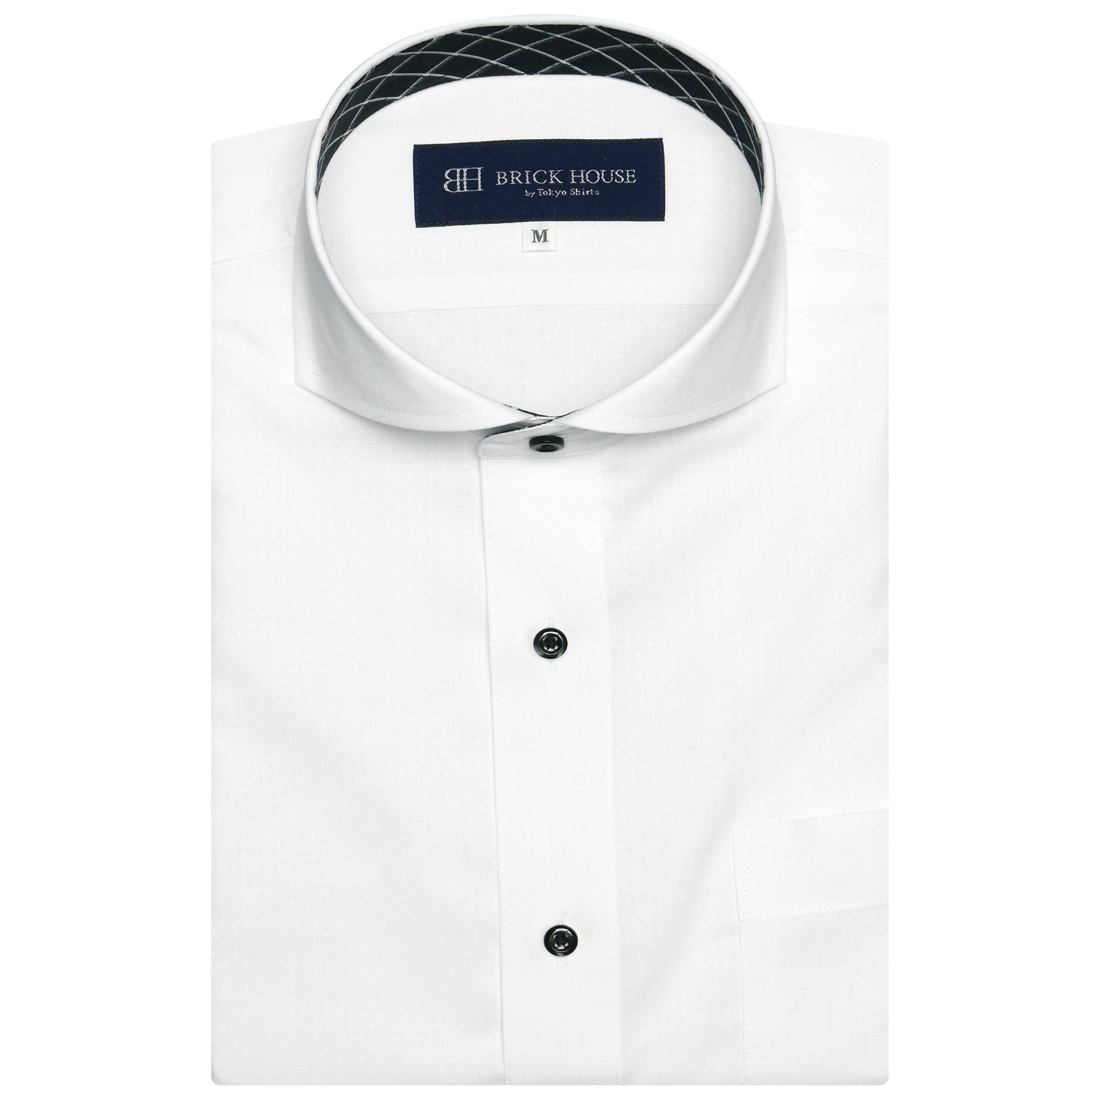 【ホワイト】(M)【超形態安定】 ワイドカラー 半袖 形態安定 ワイシャツ